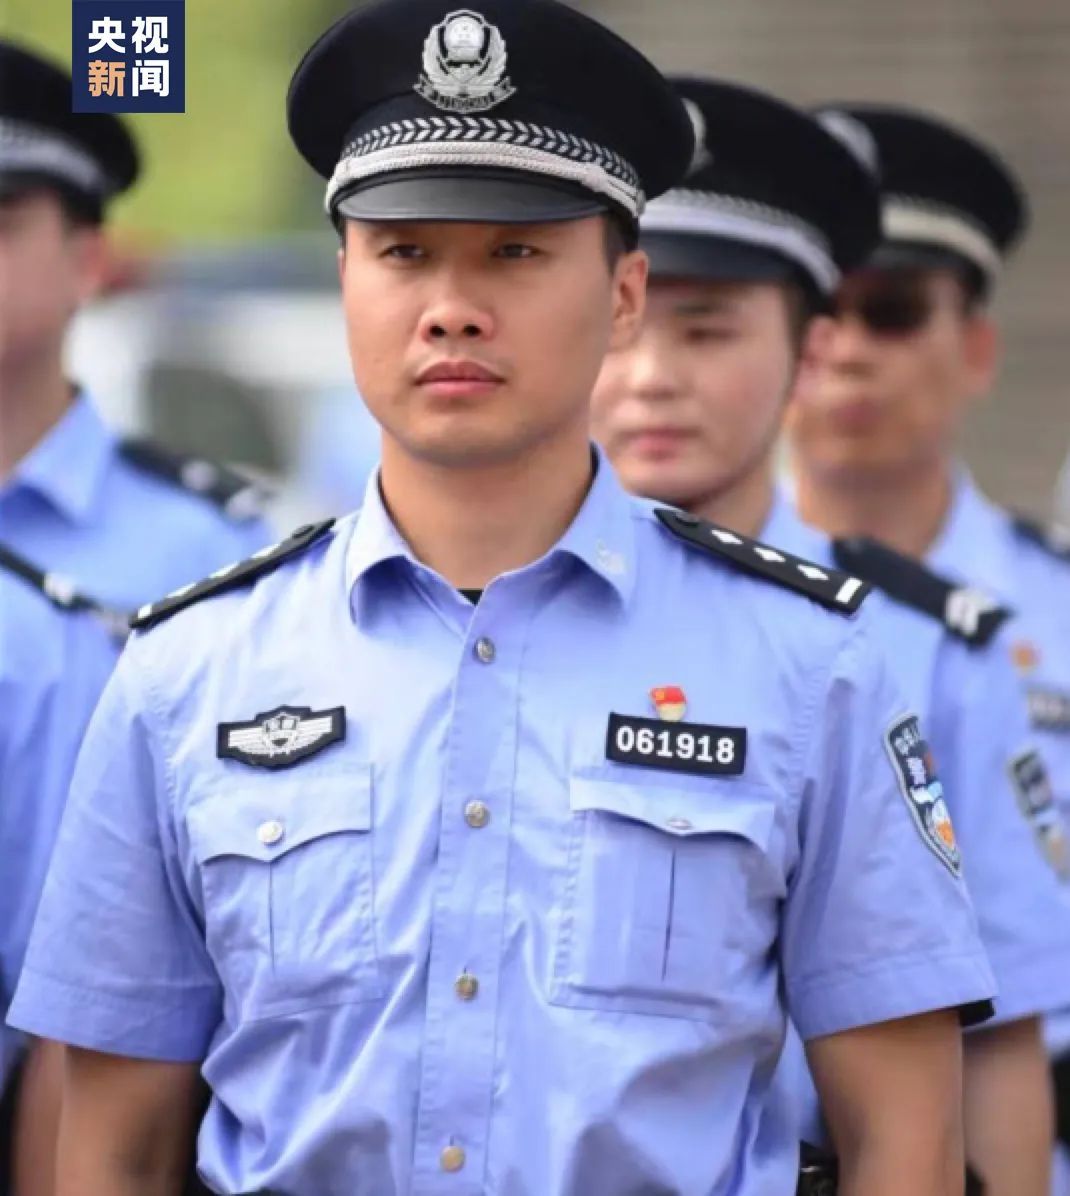 世界上最帅的警察图片